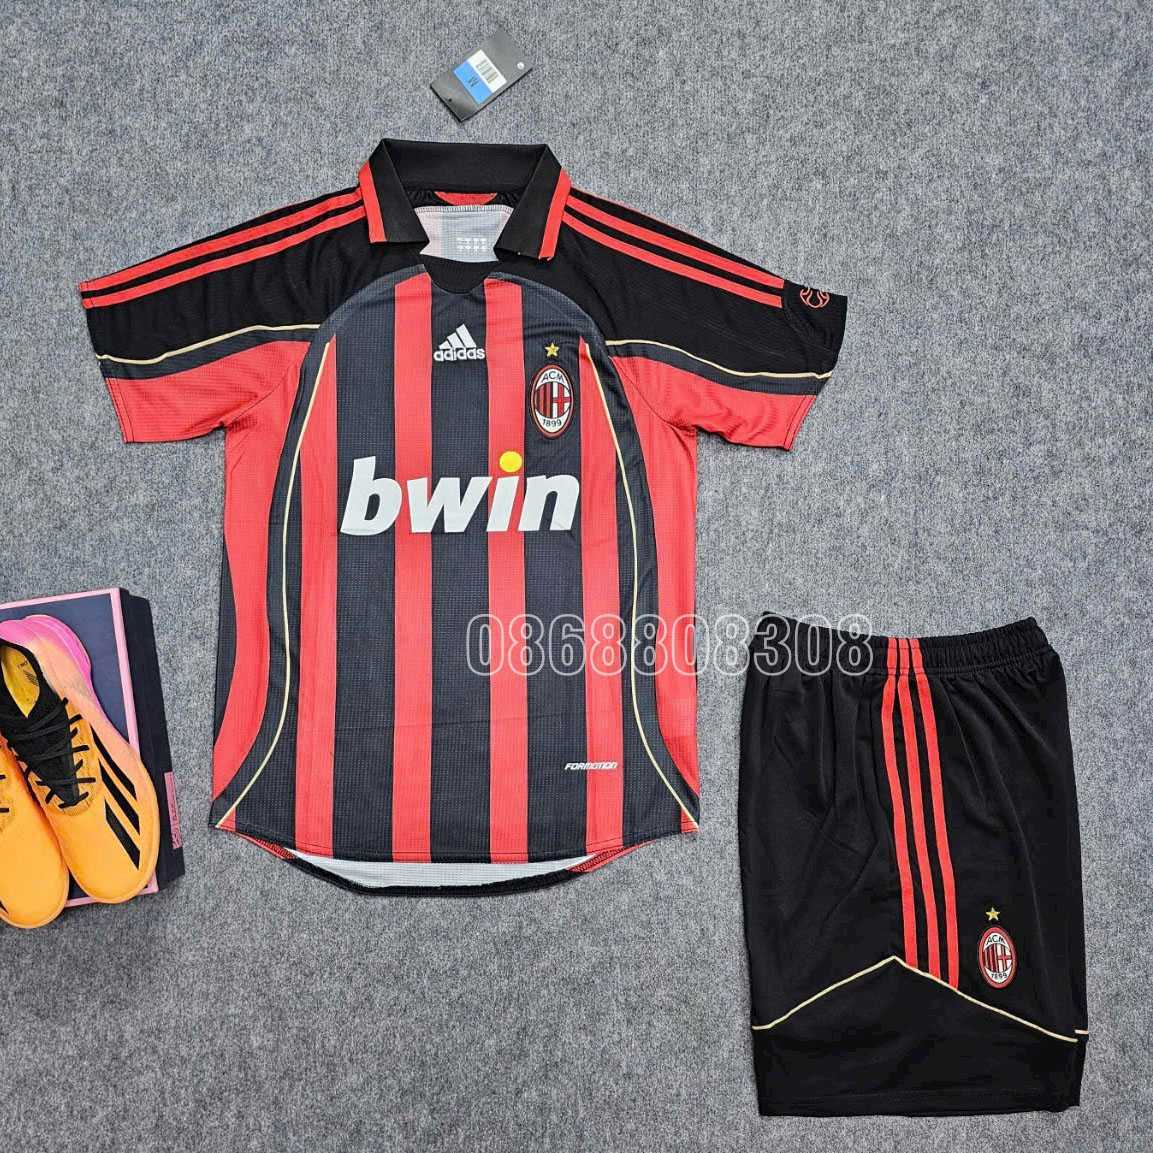 Bộ quần áo bóng đá ACM AC Milan Away 06 07 màu đỏ đen Bwin full logo thêu viền đỏ lo mới vải chuẩn spf thái năm 2006 2007 1